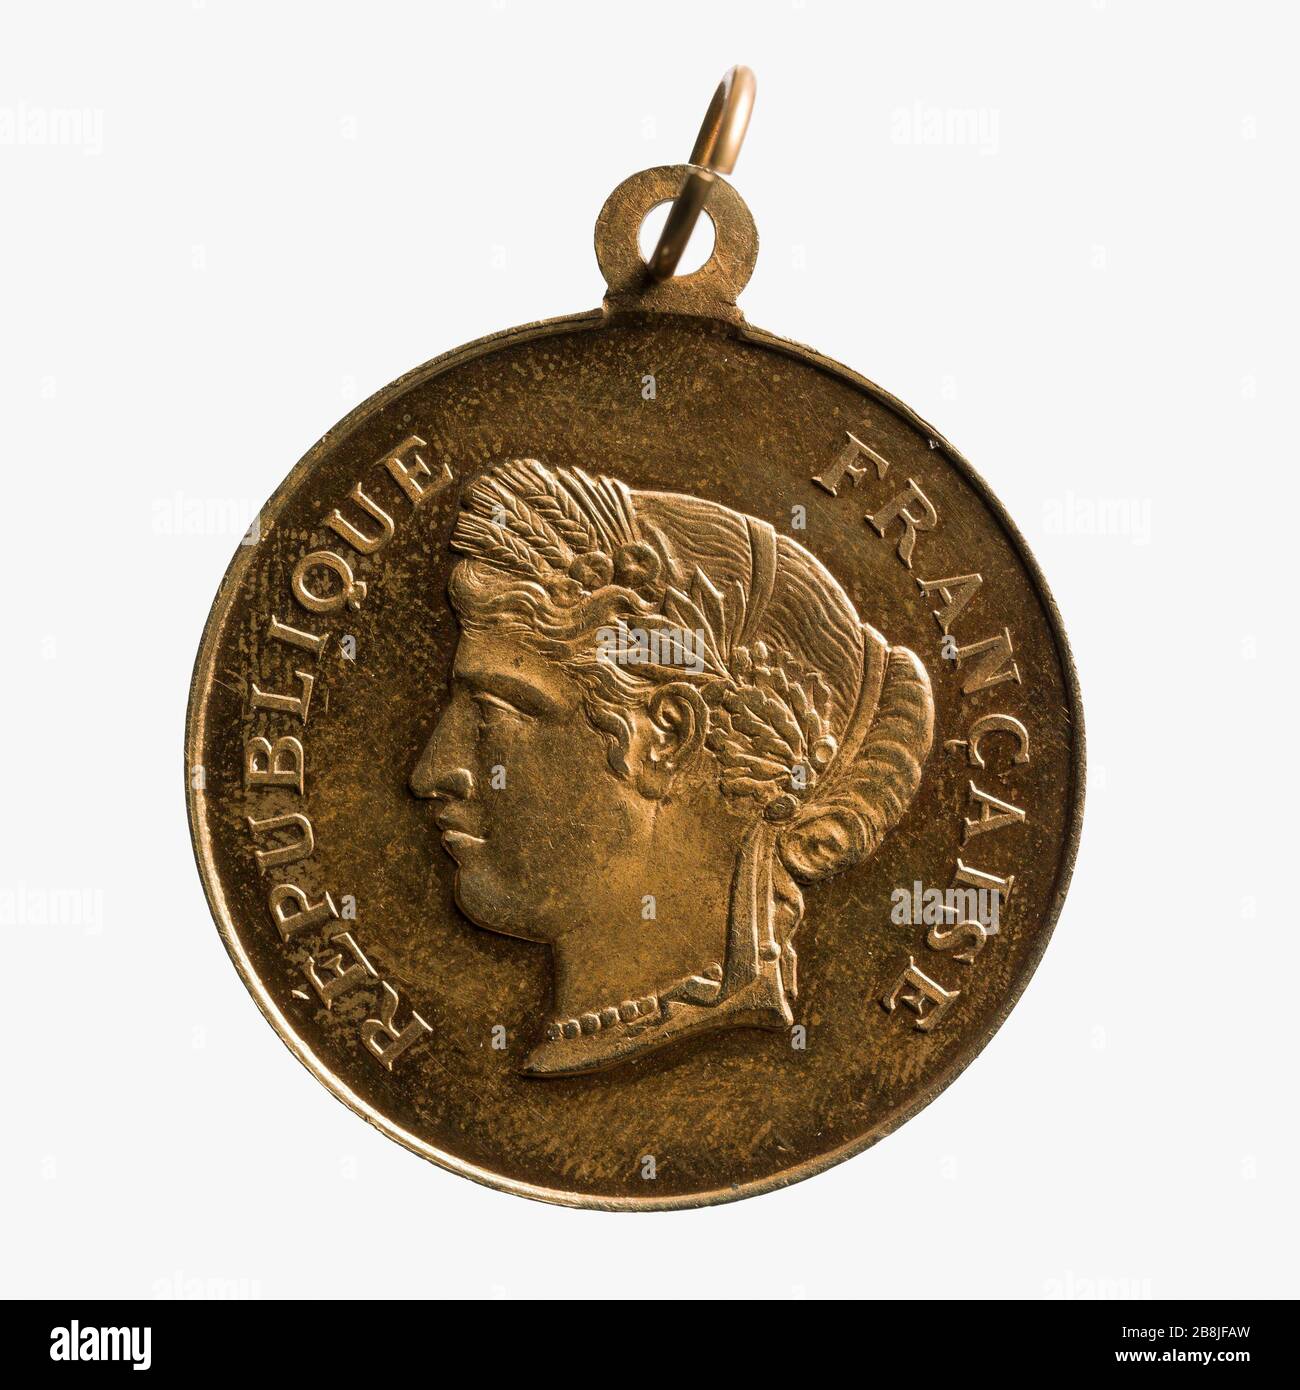 Giornata Nazionale, 14 luglio 1882 Médaille commémorative de la Fête nationale, 14 juillet 1882. Parigi, musée Carnavalet. Foto Stock